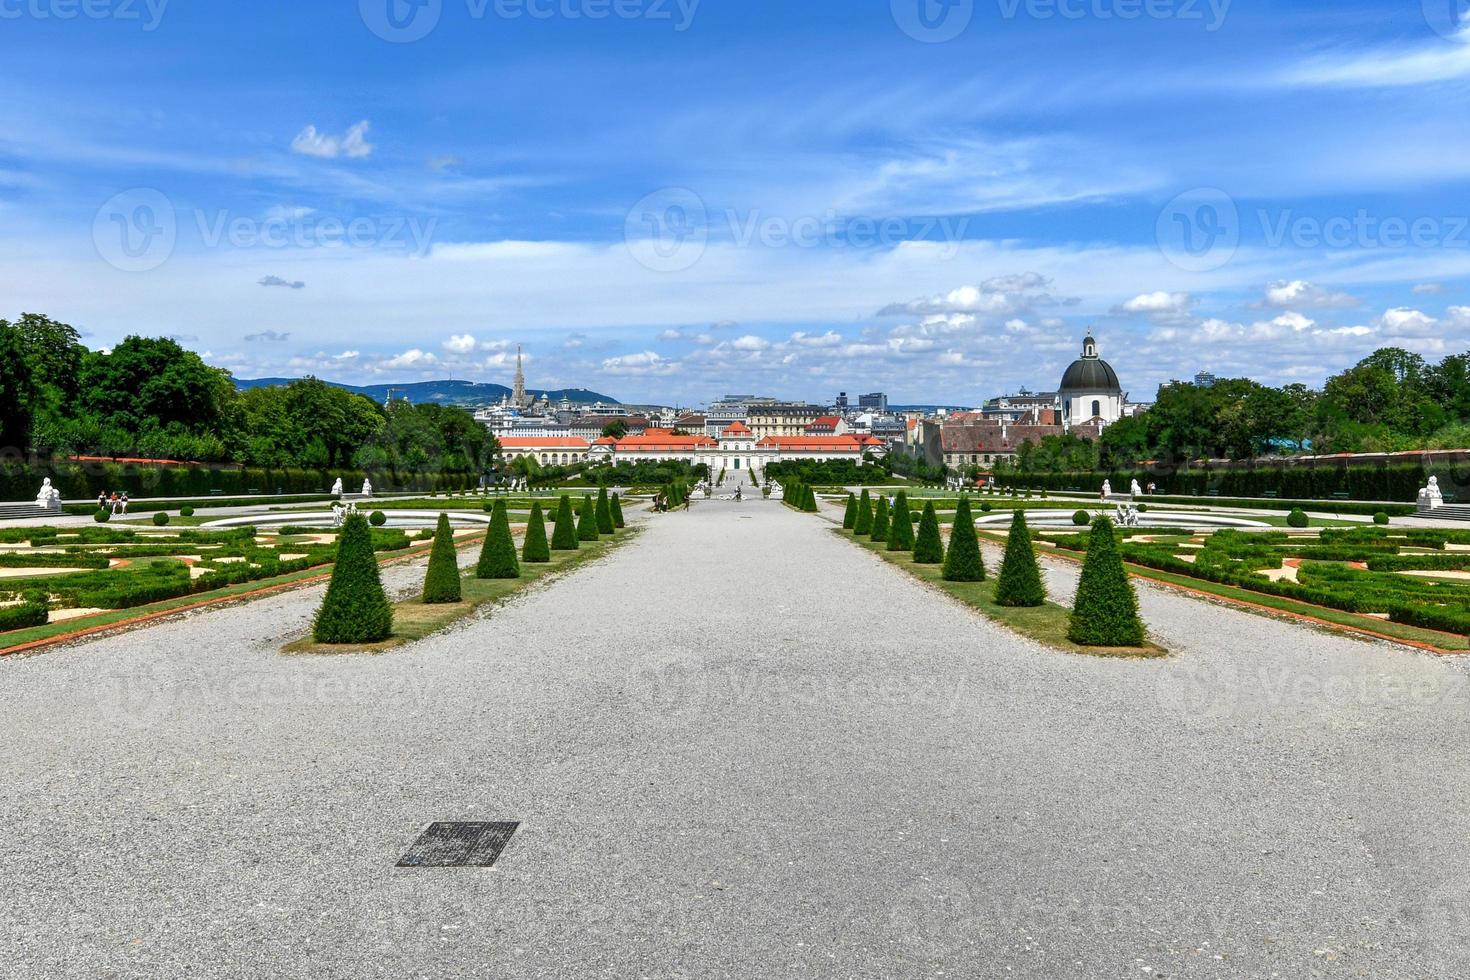 visie van de belvedere paleis en tuin met fontein in Wenen, Oostenrijk. foto